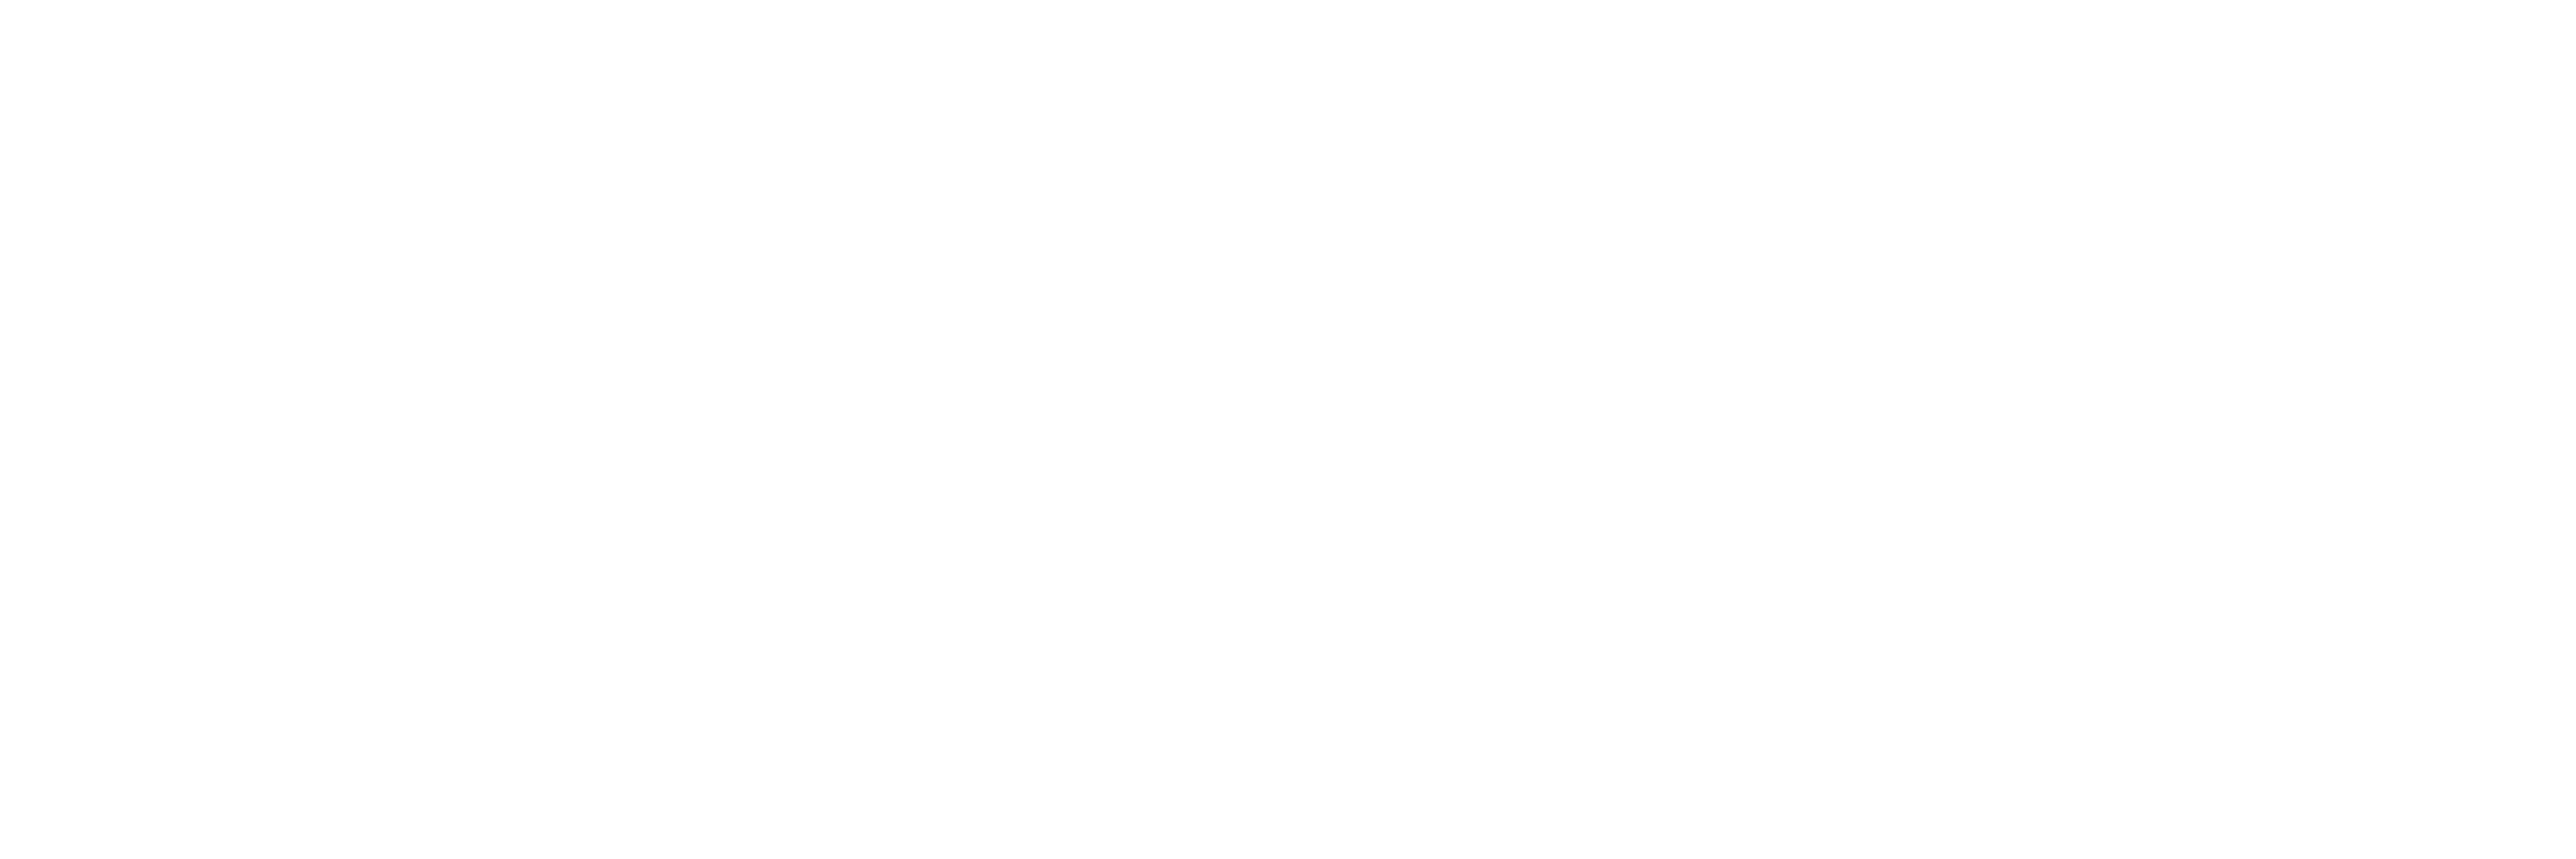 siliconstories.com